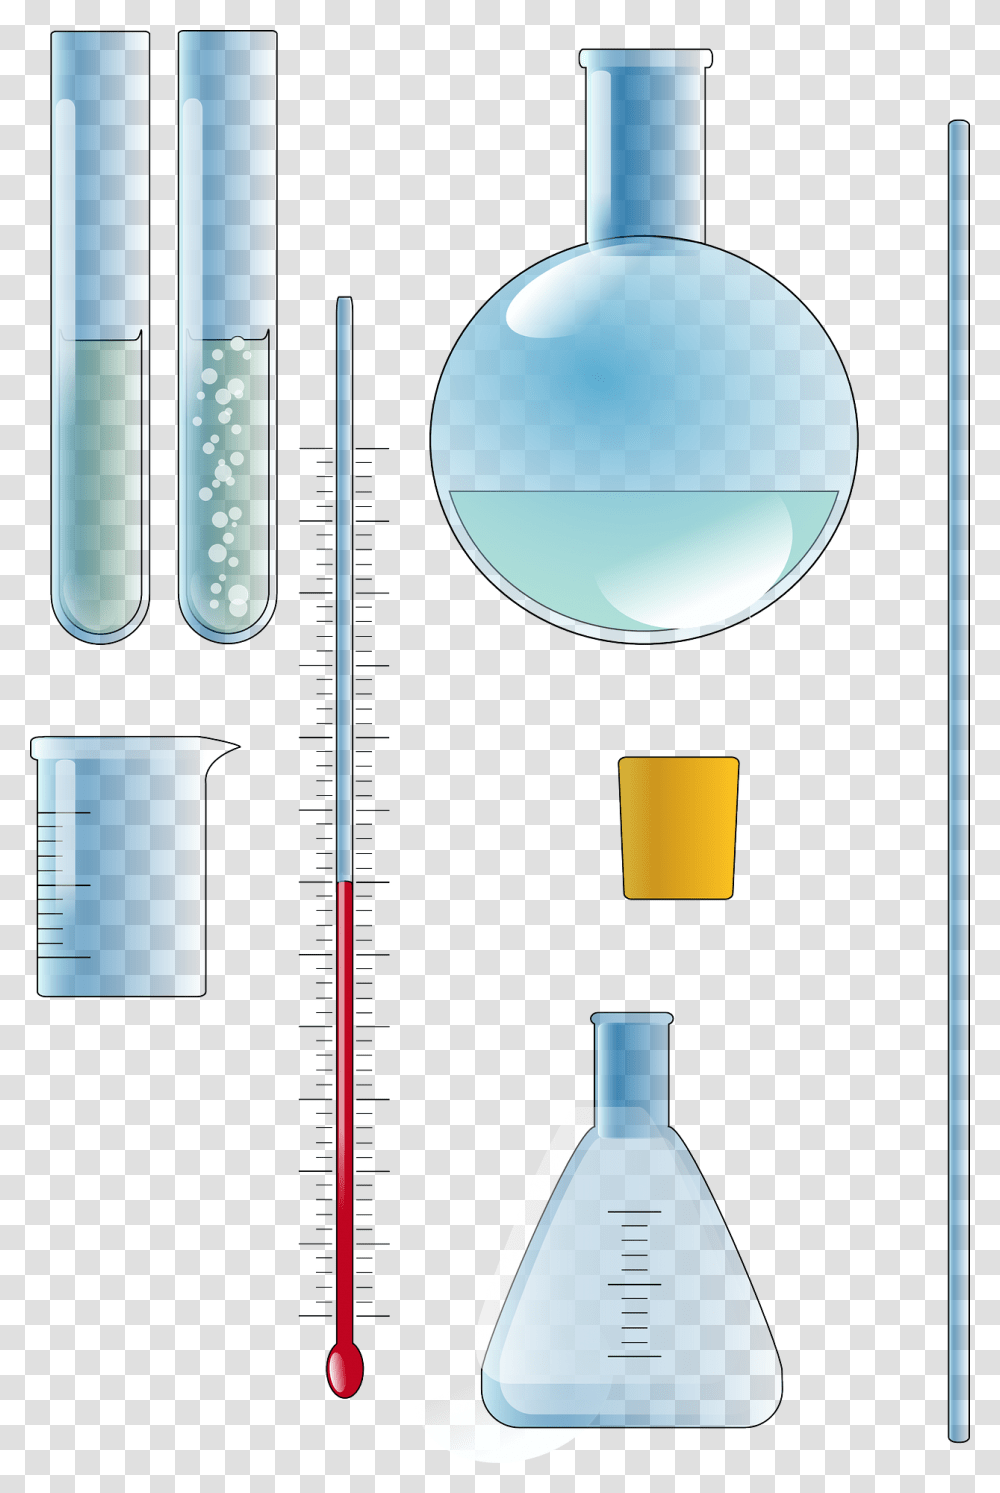 Chemistry Set Chemistry Clip Art, Plot, Diagram, Lamp, Measurements Transparent Png